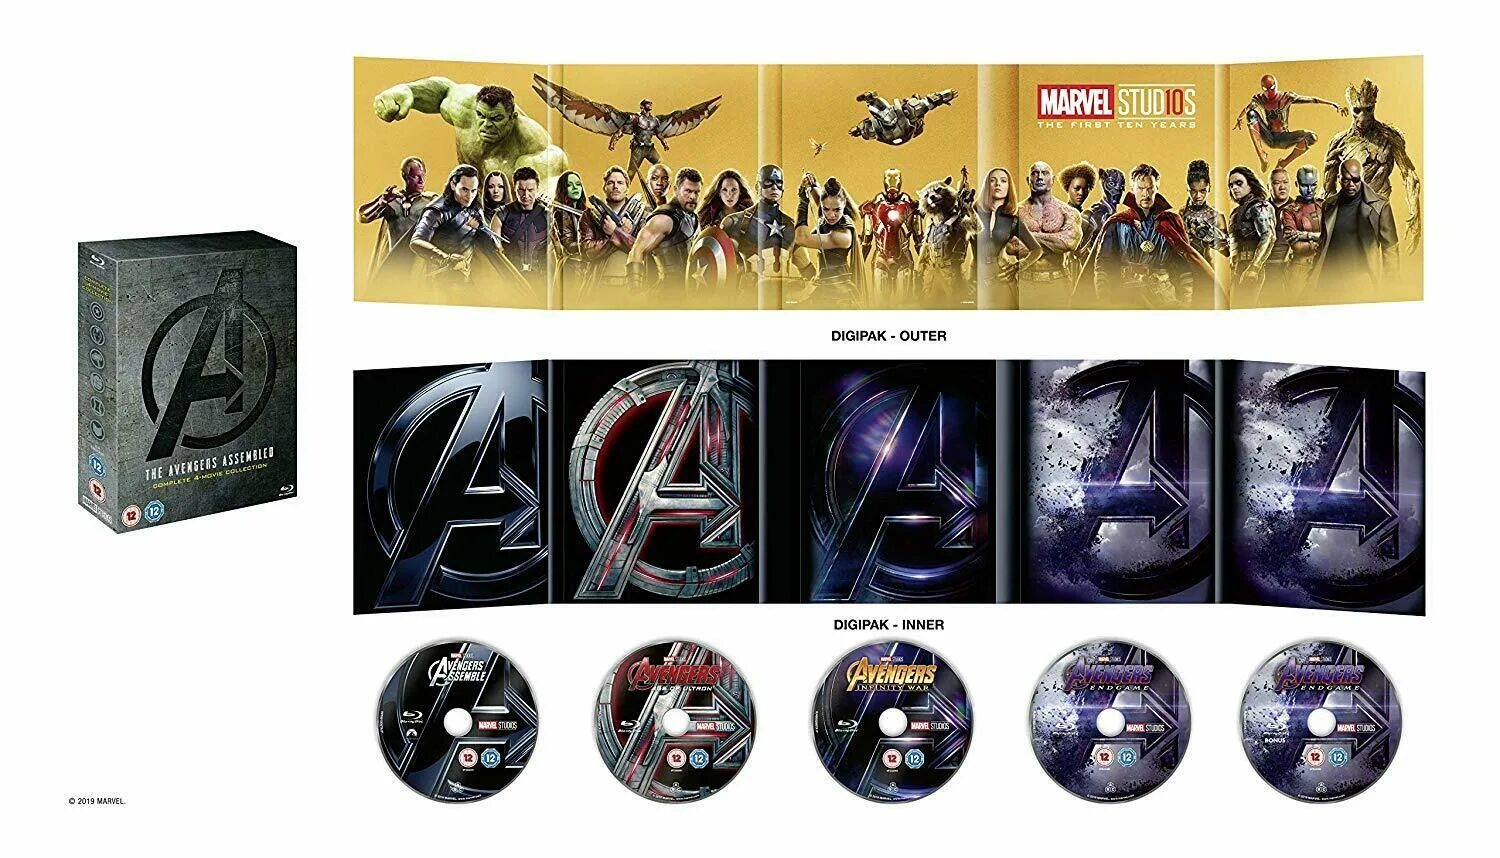 Коллекция Blu ray дисков Marvel. Avengers 4 Endgame набор. Мстители финал Blu ray диск. Марвел диски с фильмами.